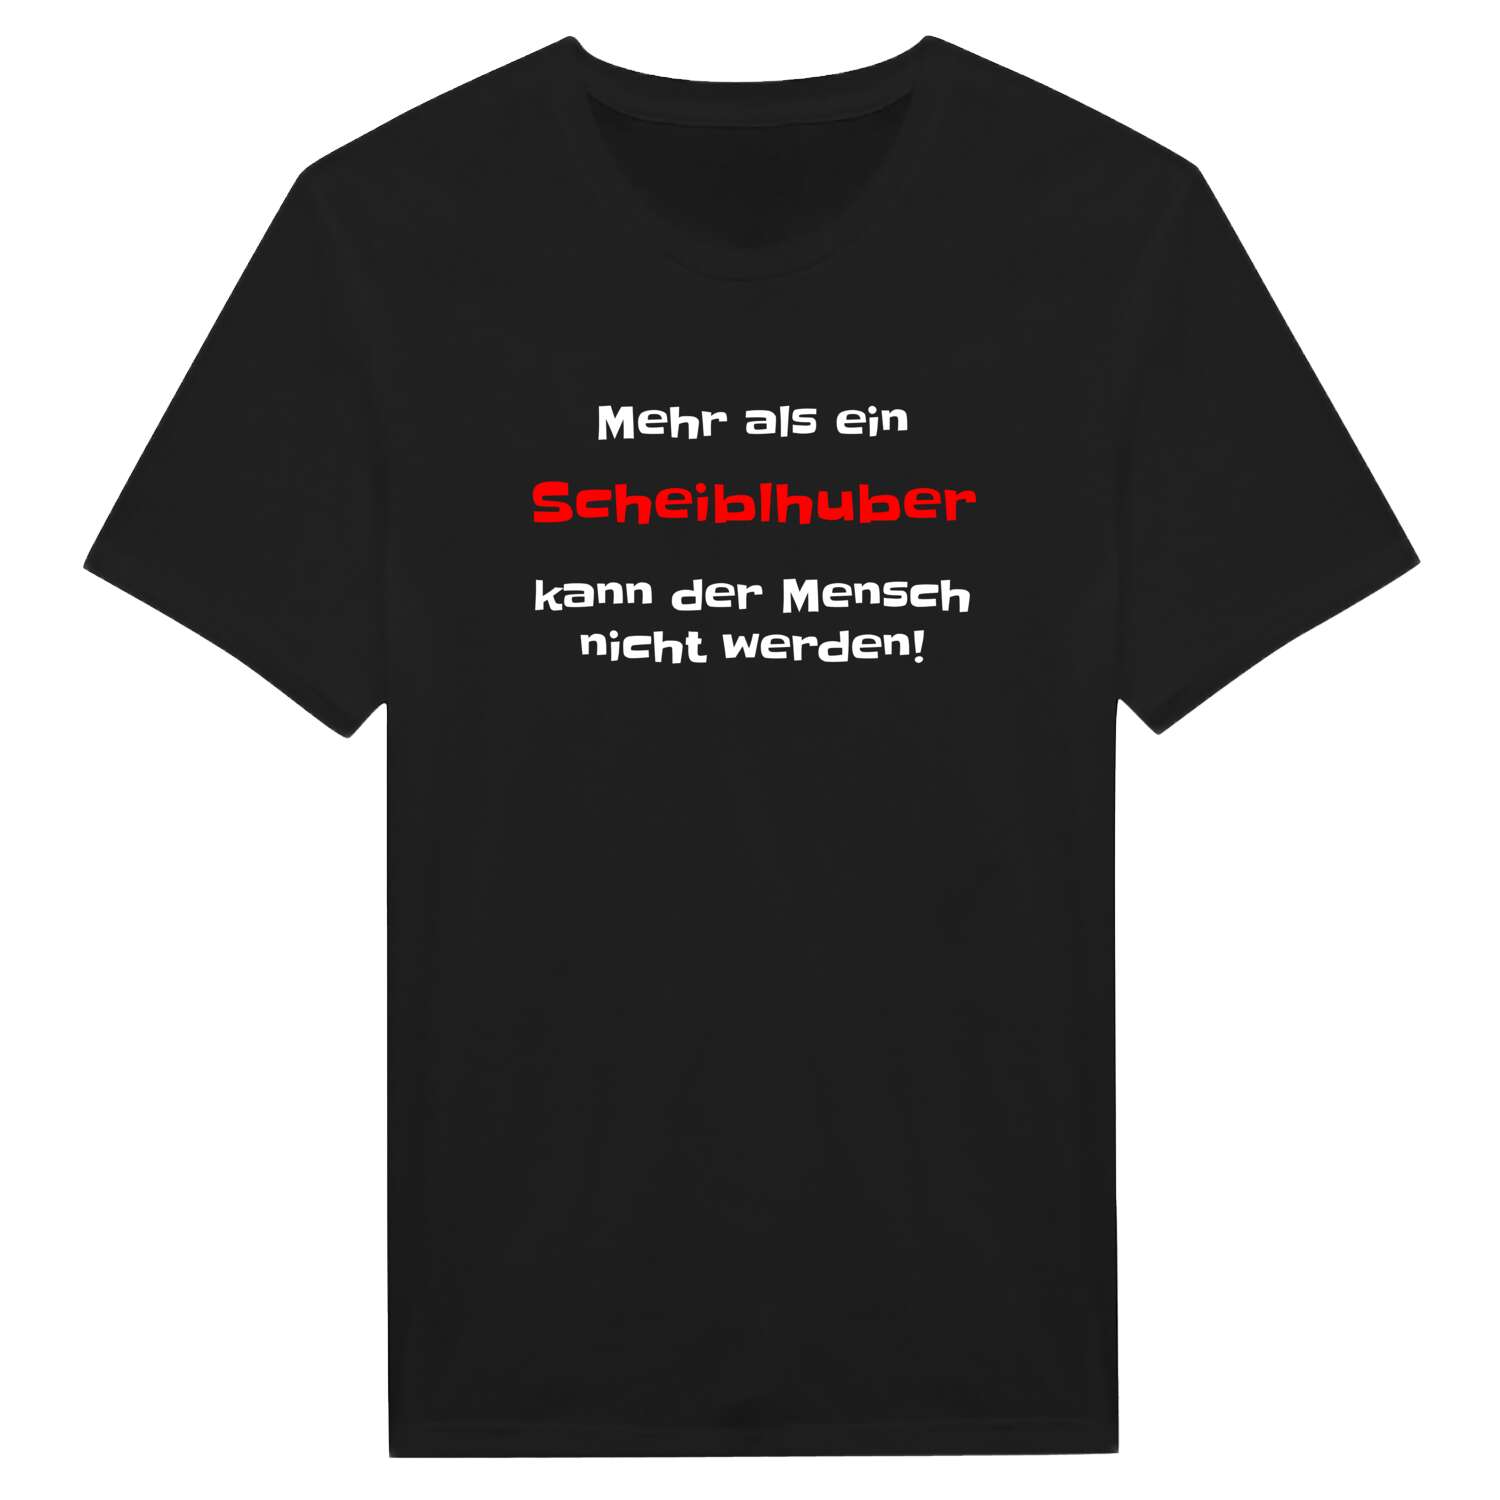 Scheiblhub T-Shirt »Mehr als ein«